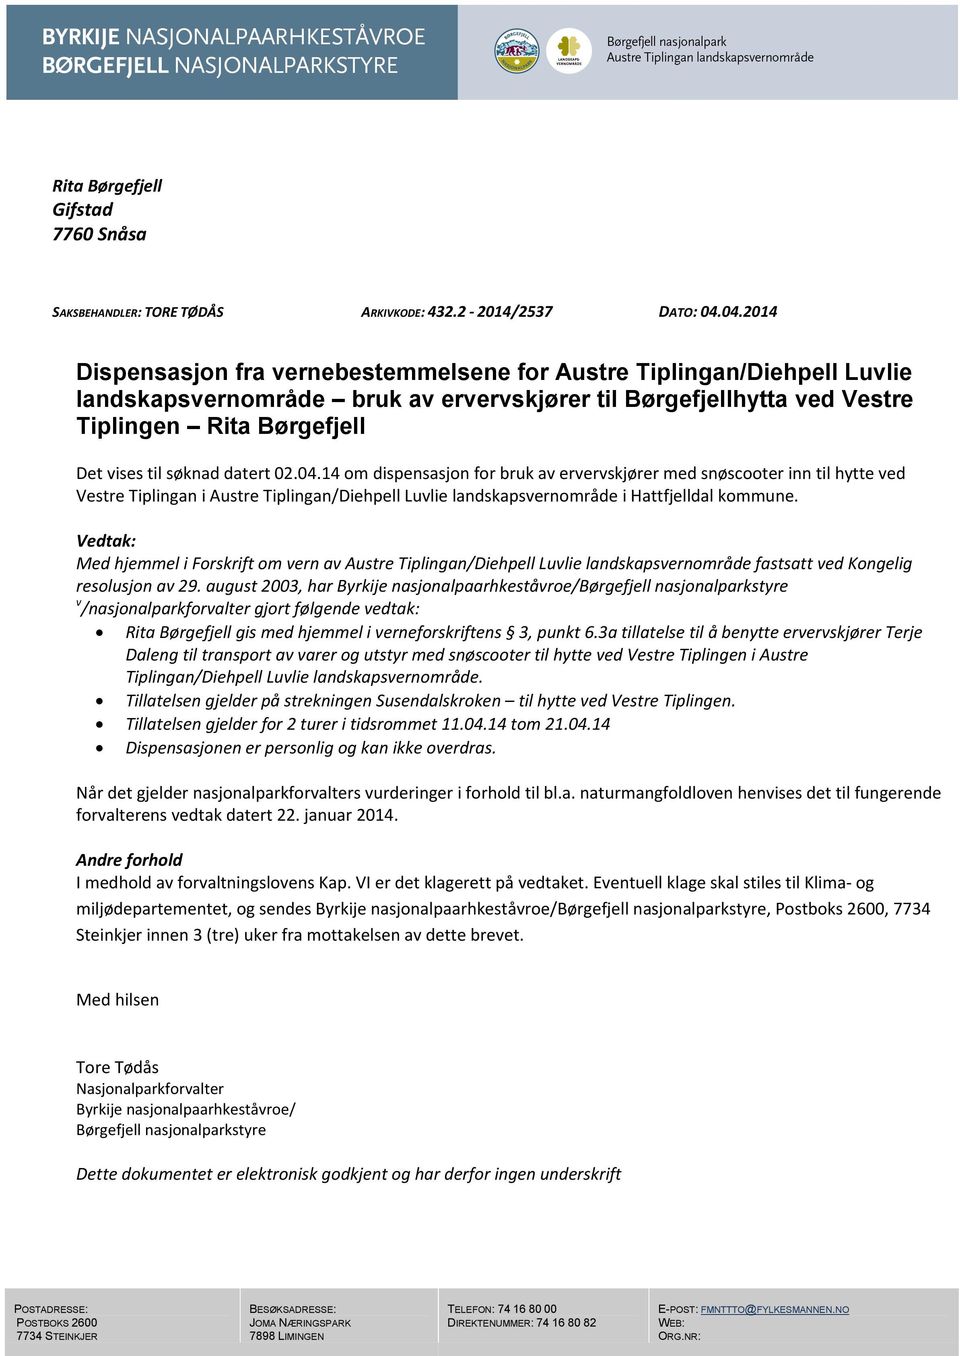 søknad datert 02.04.14 om dispensasjon for bruk av ervervskjører med snøscooter inn til hytte ved Vestre Tiplingan i Austre Tiplingan/Diehpell Luvlie landskapsvernområde i Hattfjelldal kommune.